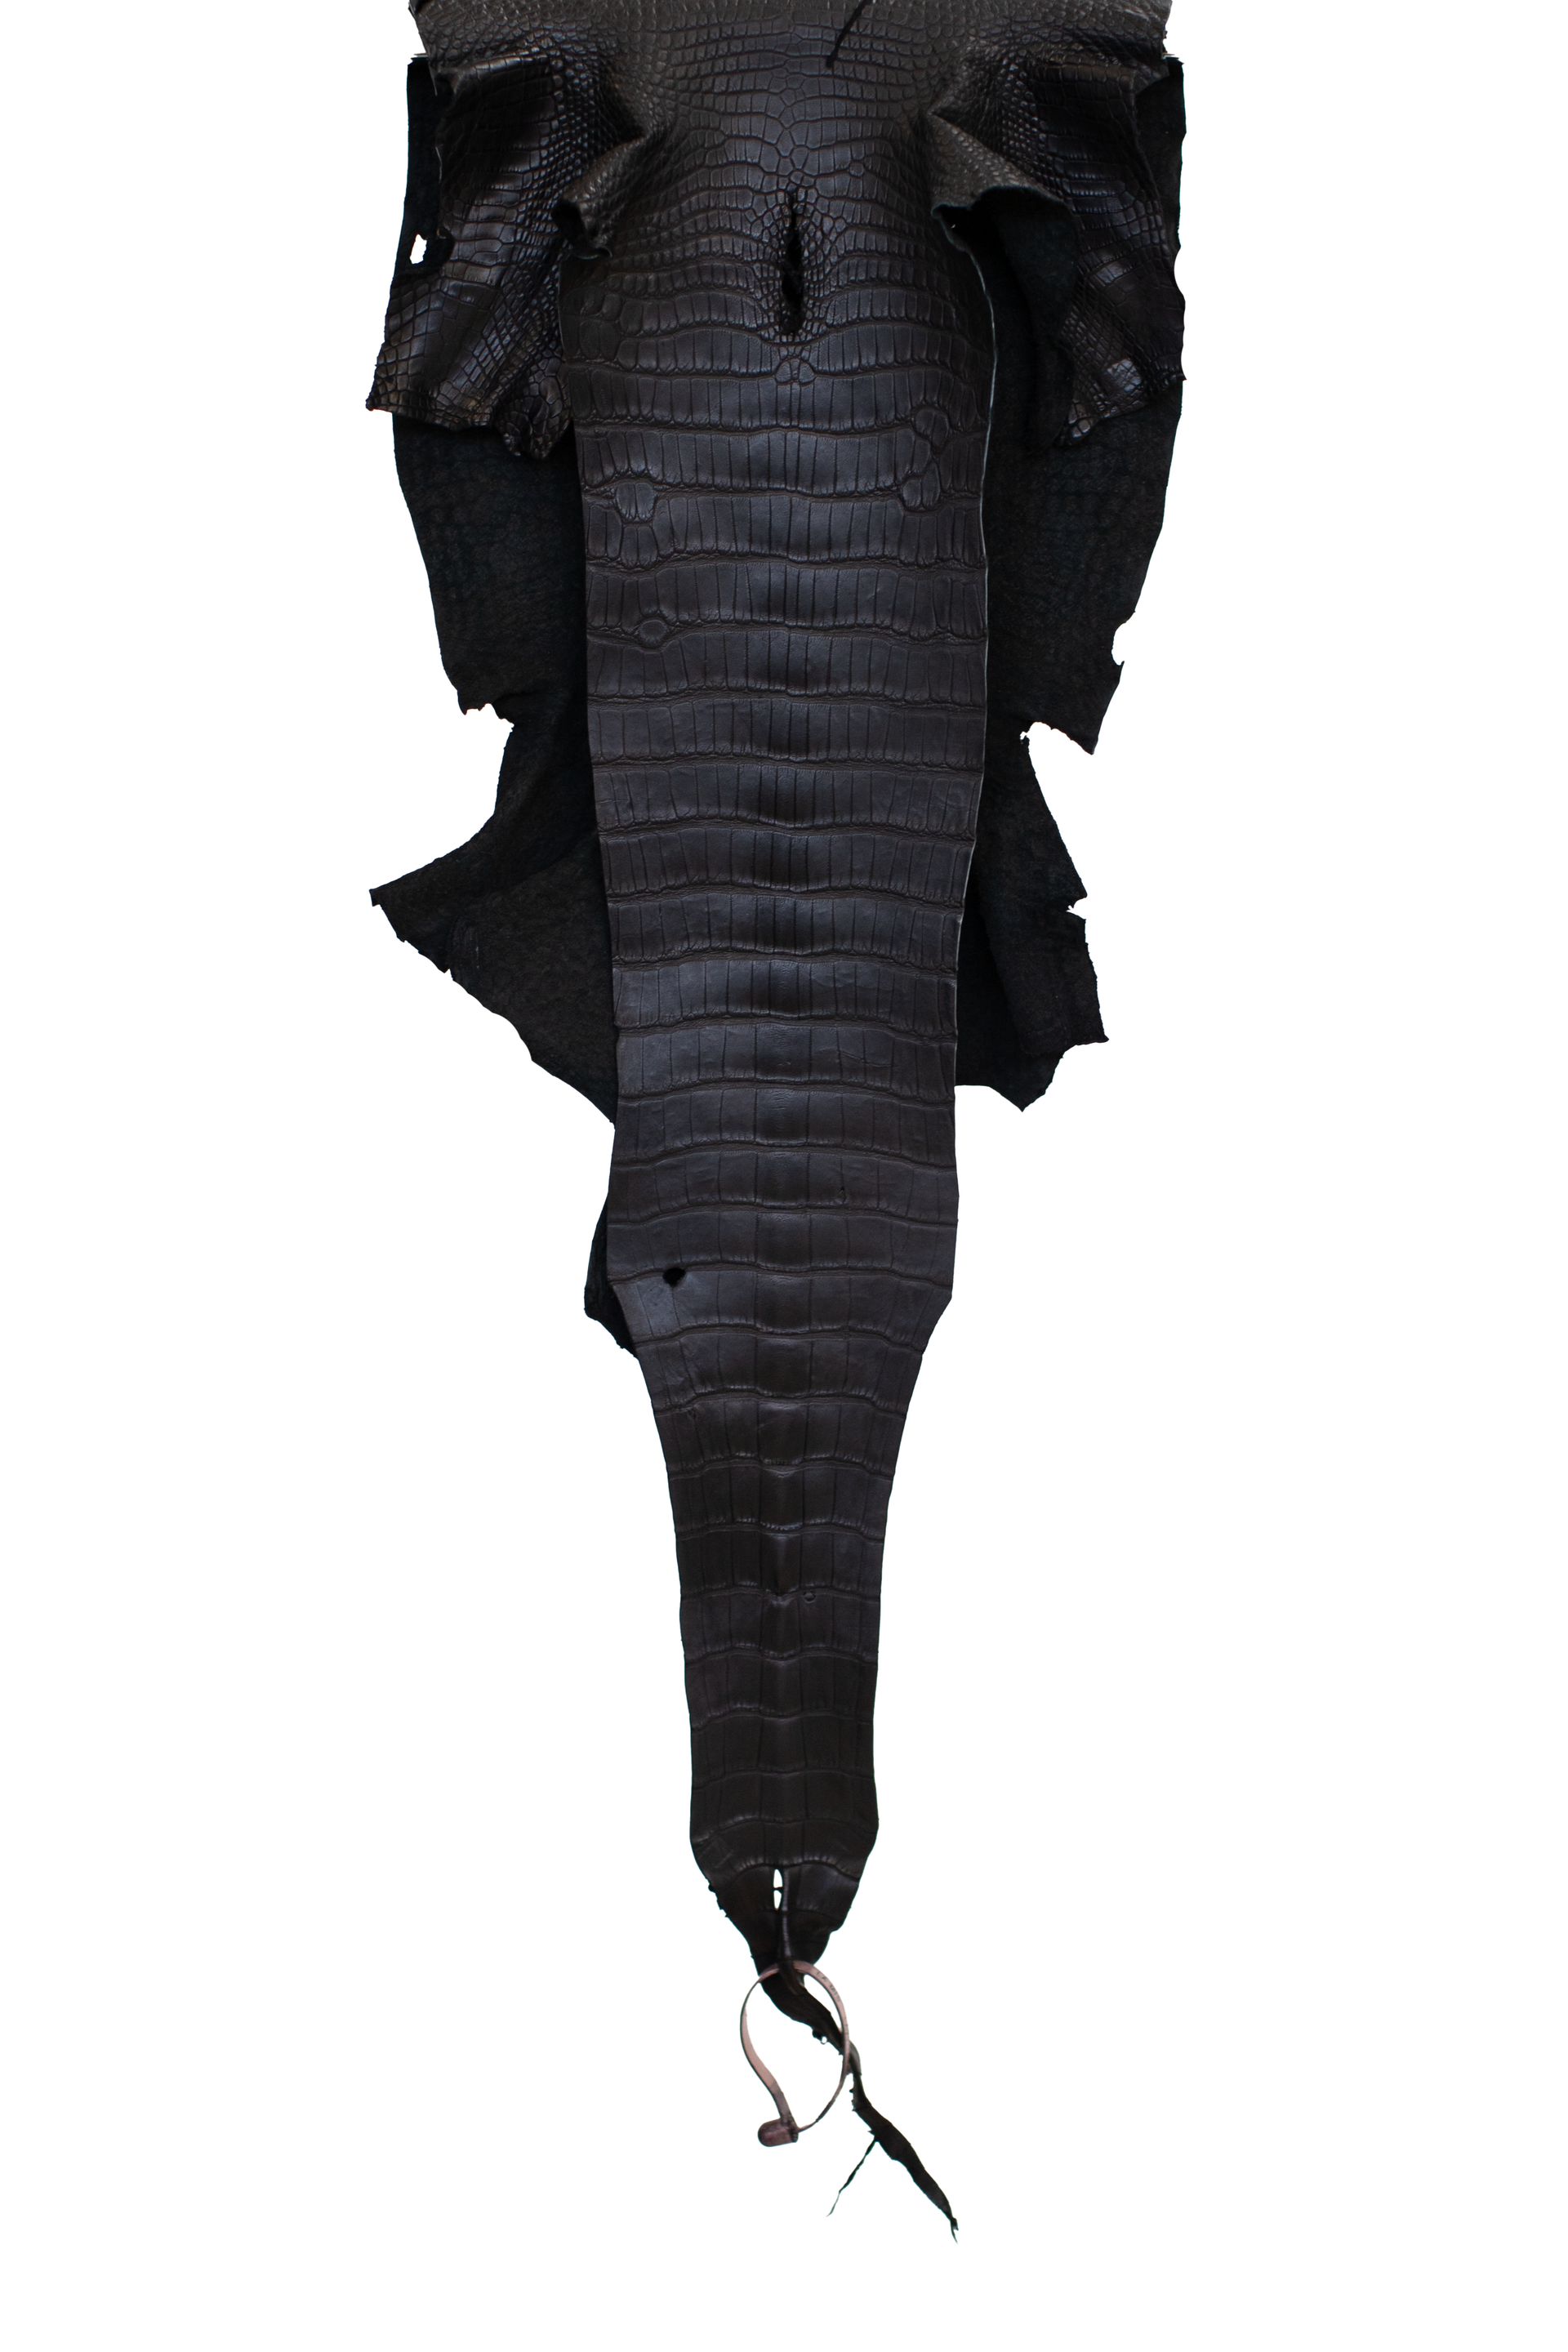 30 cm Grade 3/4 Black Matte Wild American Alligator Leather - Tag: LA21-0101549